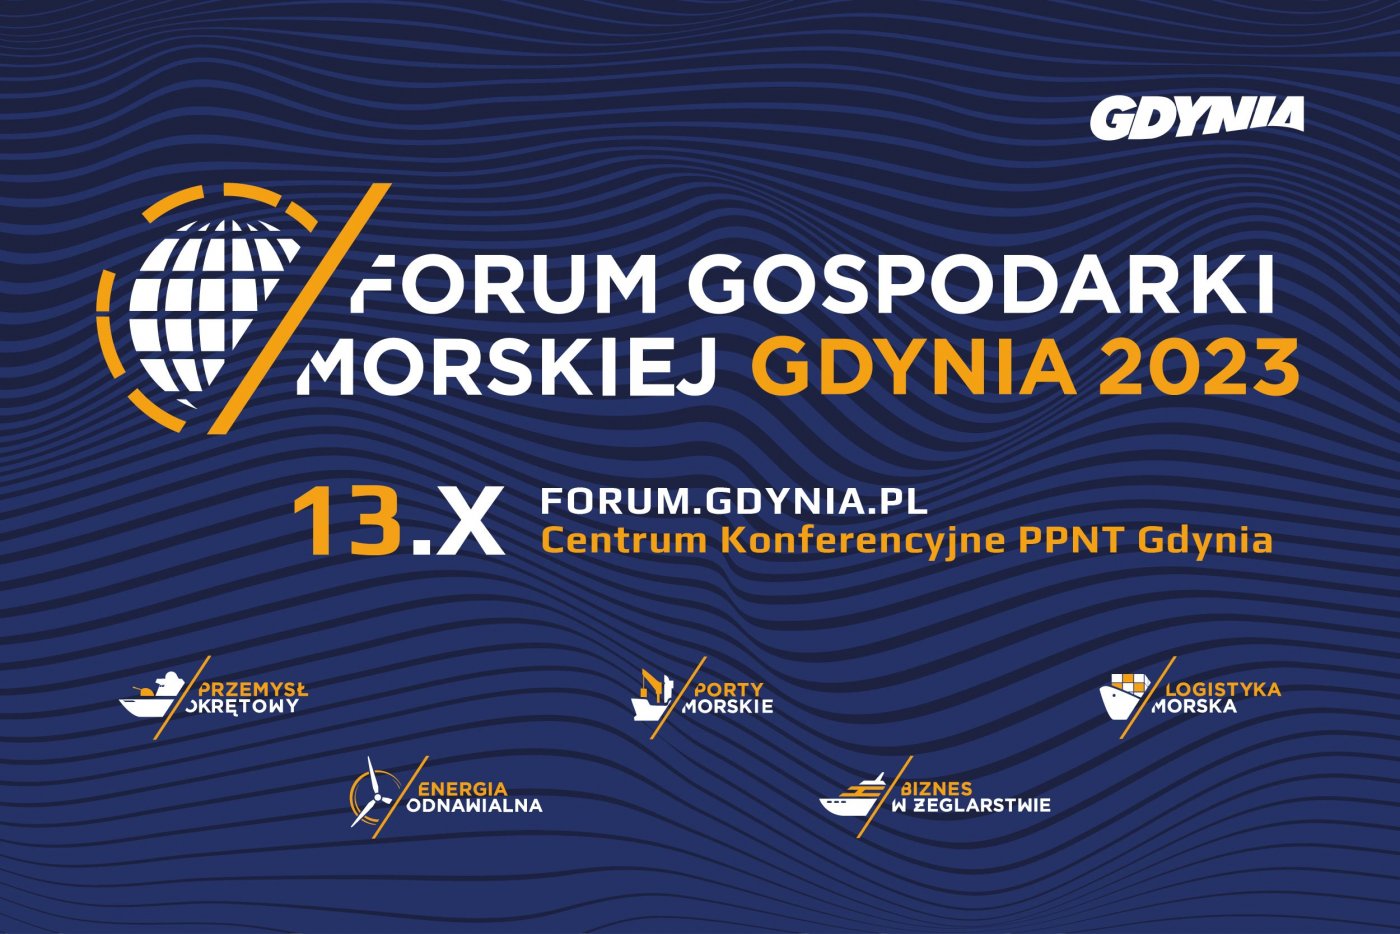 Forum Gospodarki Morskiej Gdynia 2023.